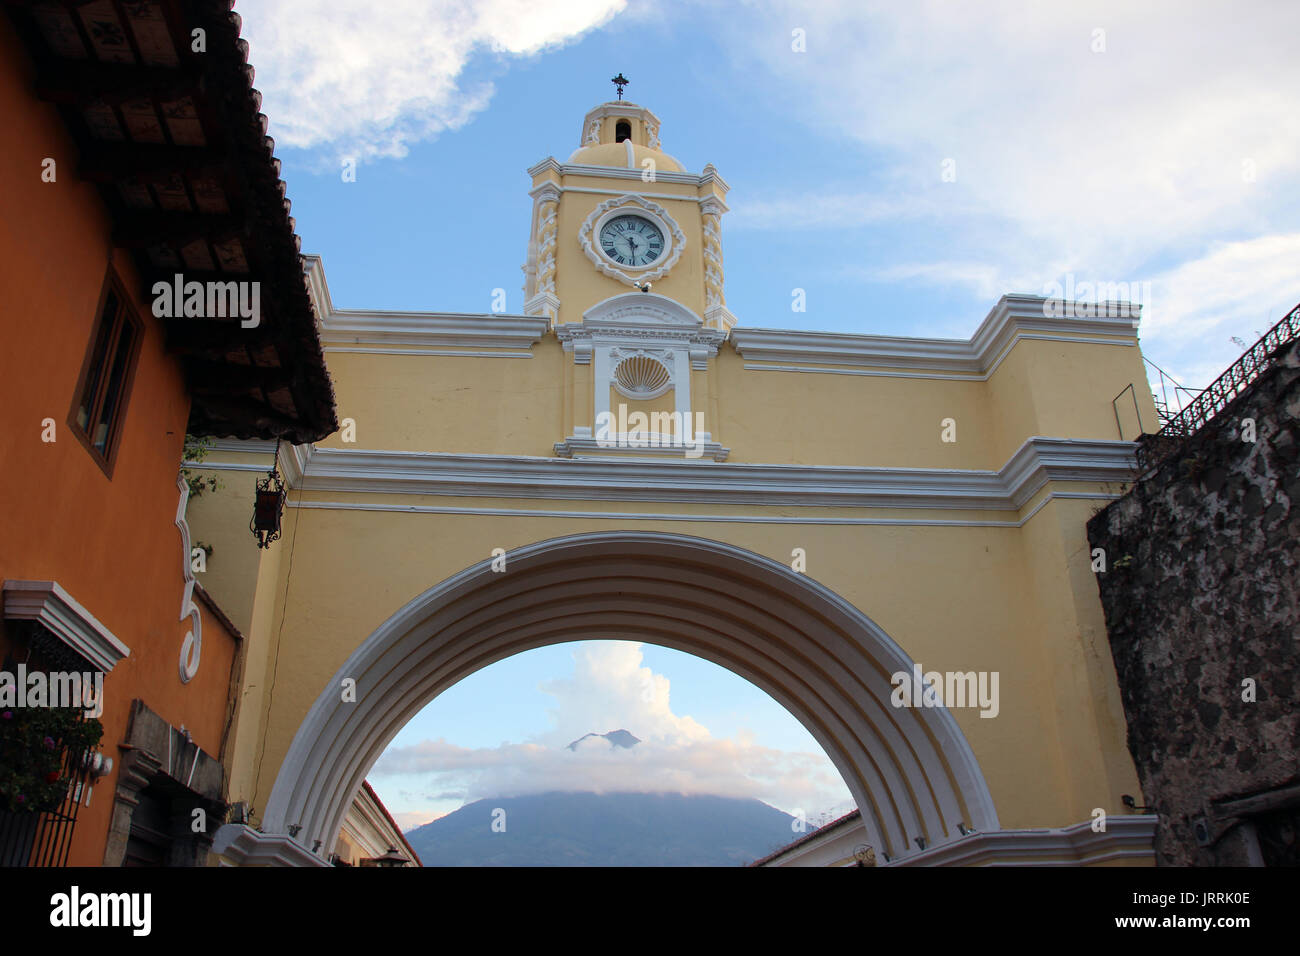 Arco con Reloj De La Calle Principal de La Antigua Guatemala, al Fondo se ve El Volcán de Agua, el arco es icono de la Ciudad y un punto de encuentro Stockfoto